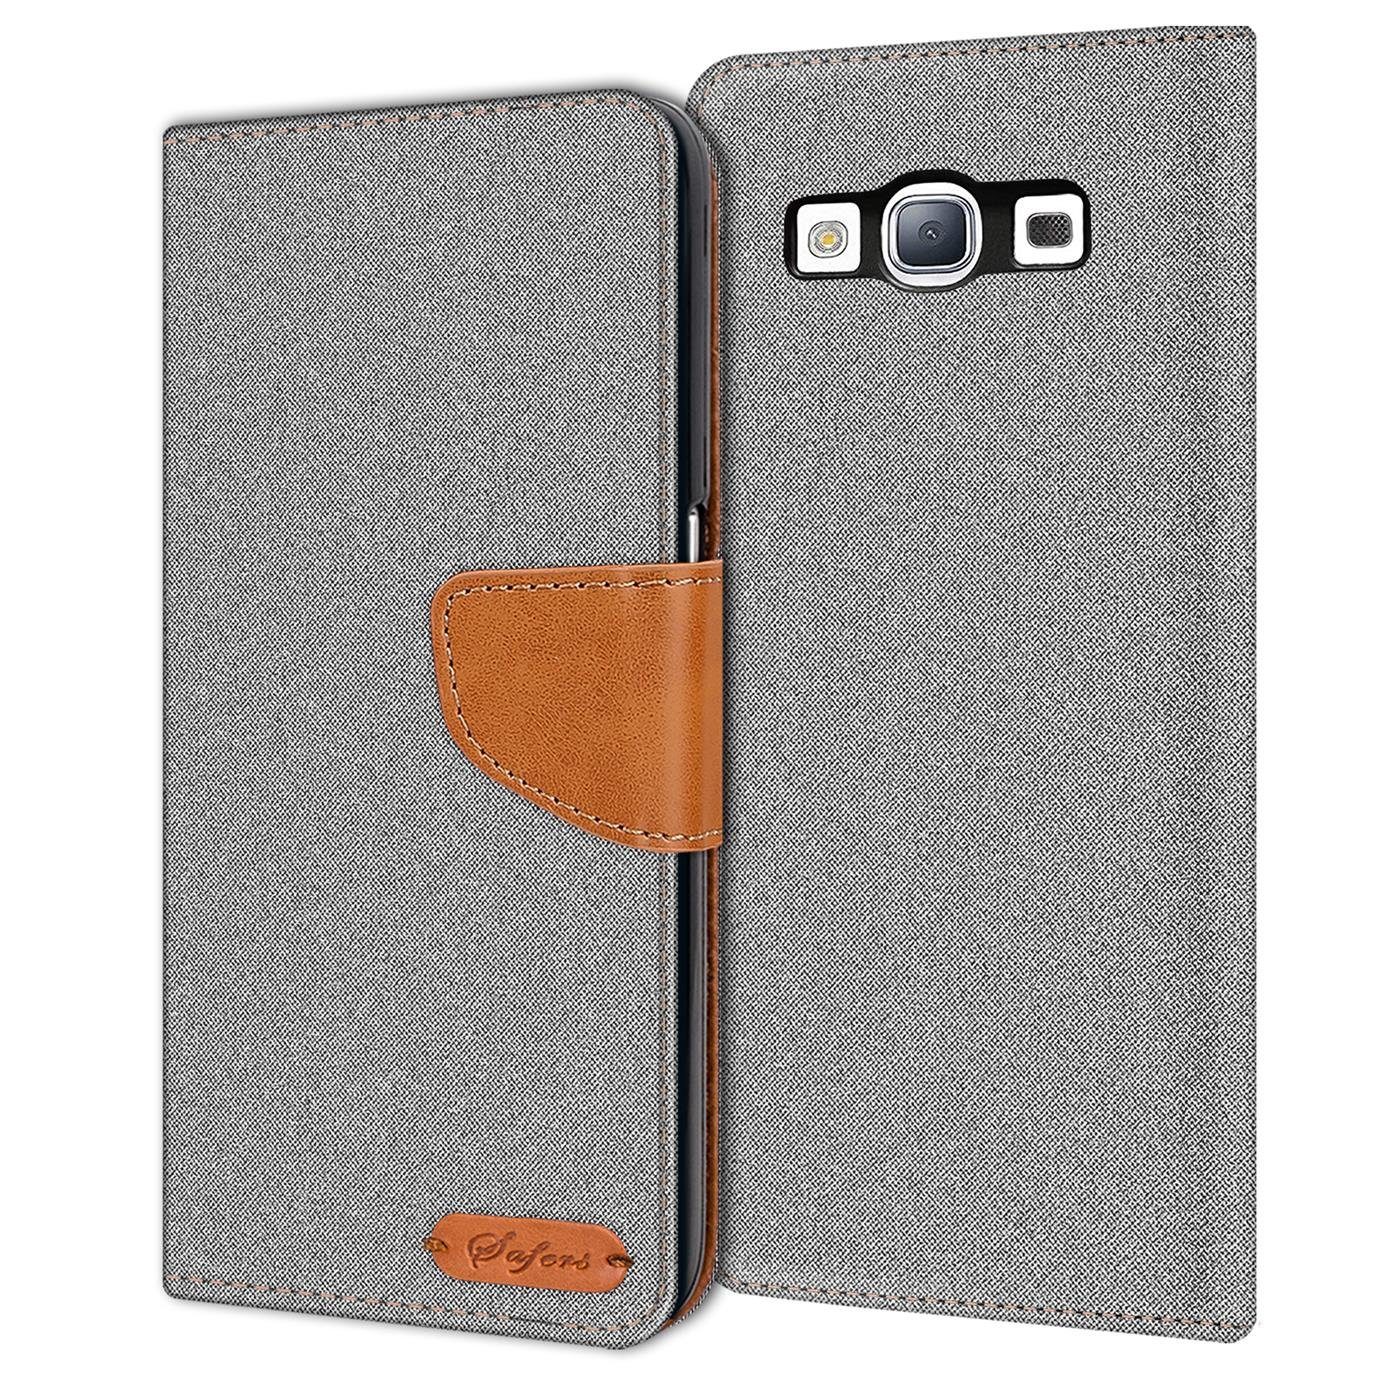 CoolGadget Handyhülle »Denim Schutzhülle Flip Case« für Samsung Galaxy S3 /  S3 Neo 4,8 Zoll, Book Cover Handy Tasche Hülle für Samsung S3 Klapphülle  online kaufen | OTTO